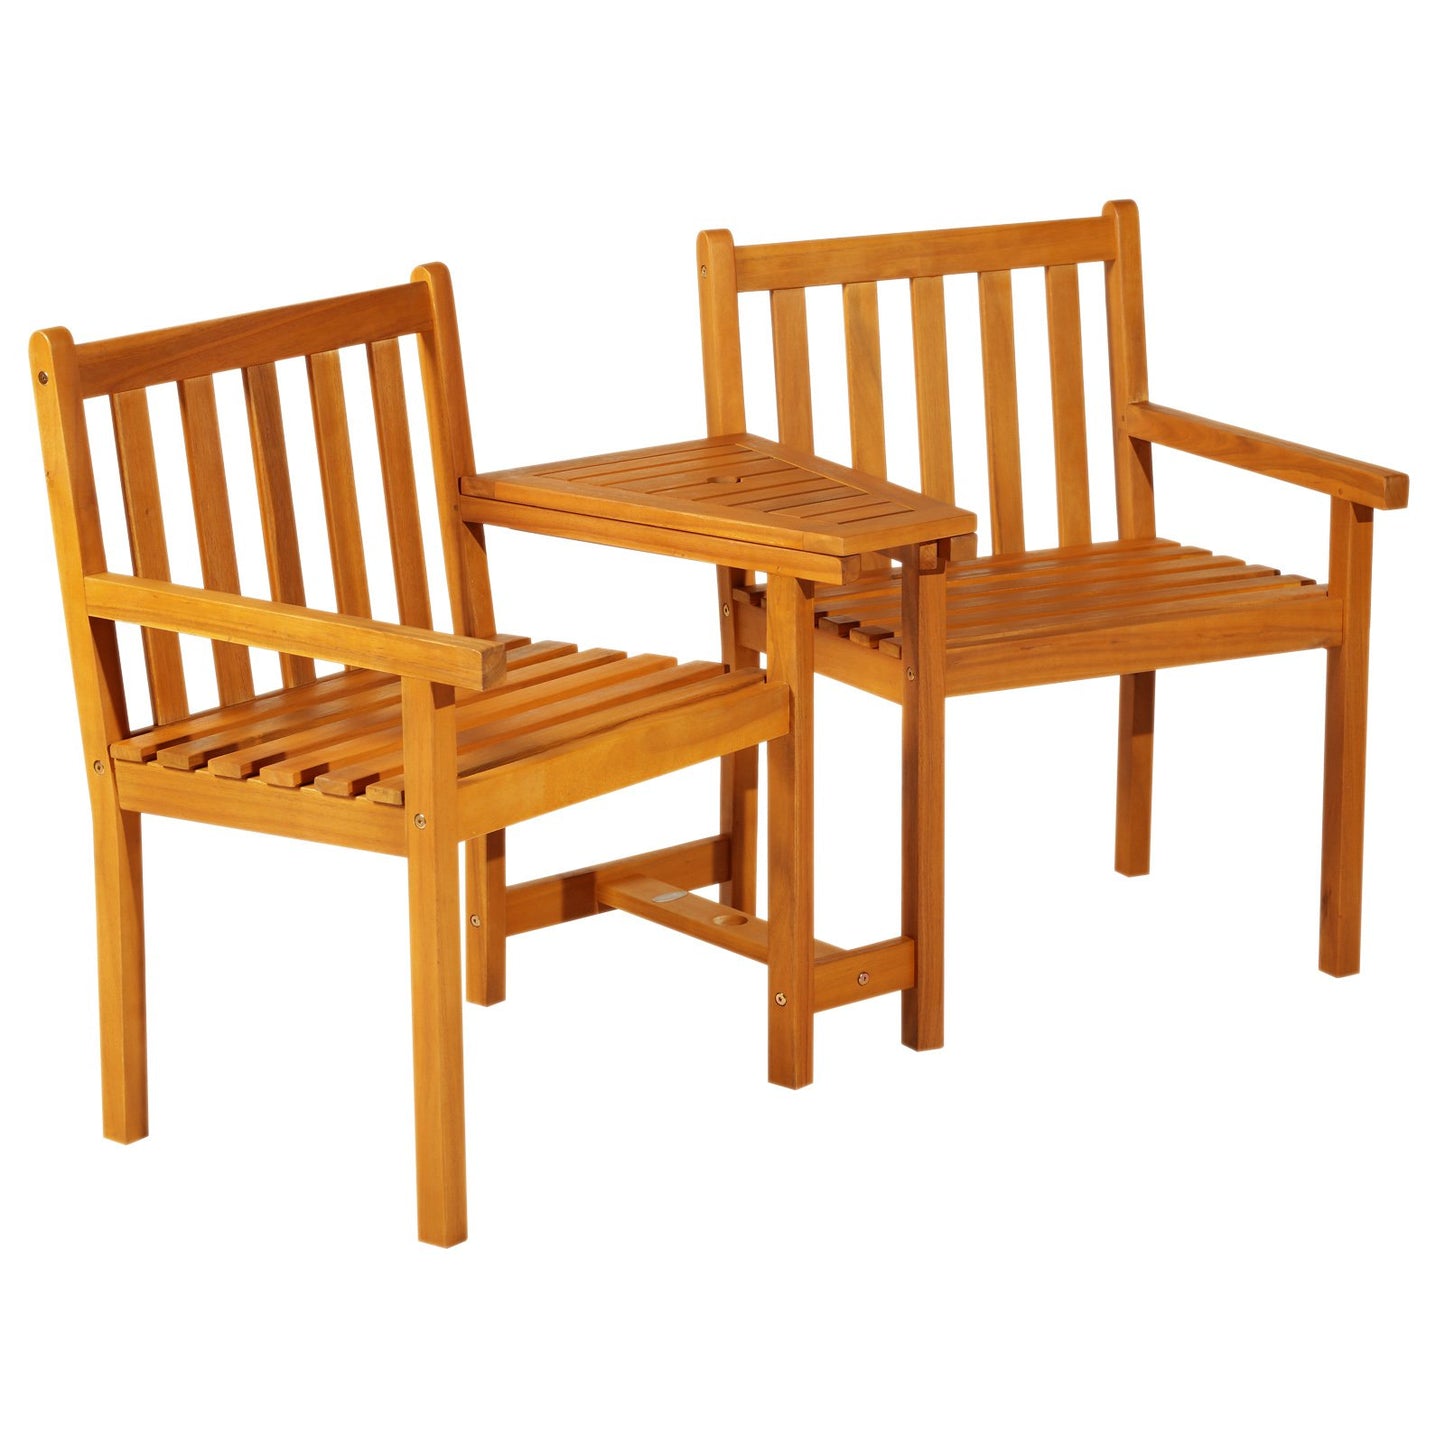 Outsunny Acacia Wood 2-Seater Outdoor Garden Armchair Bench w/ Table